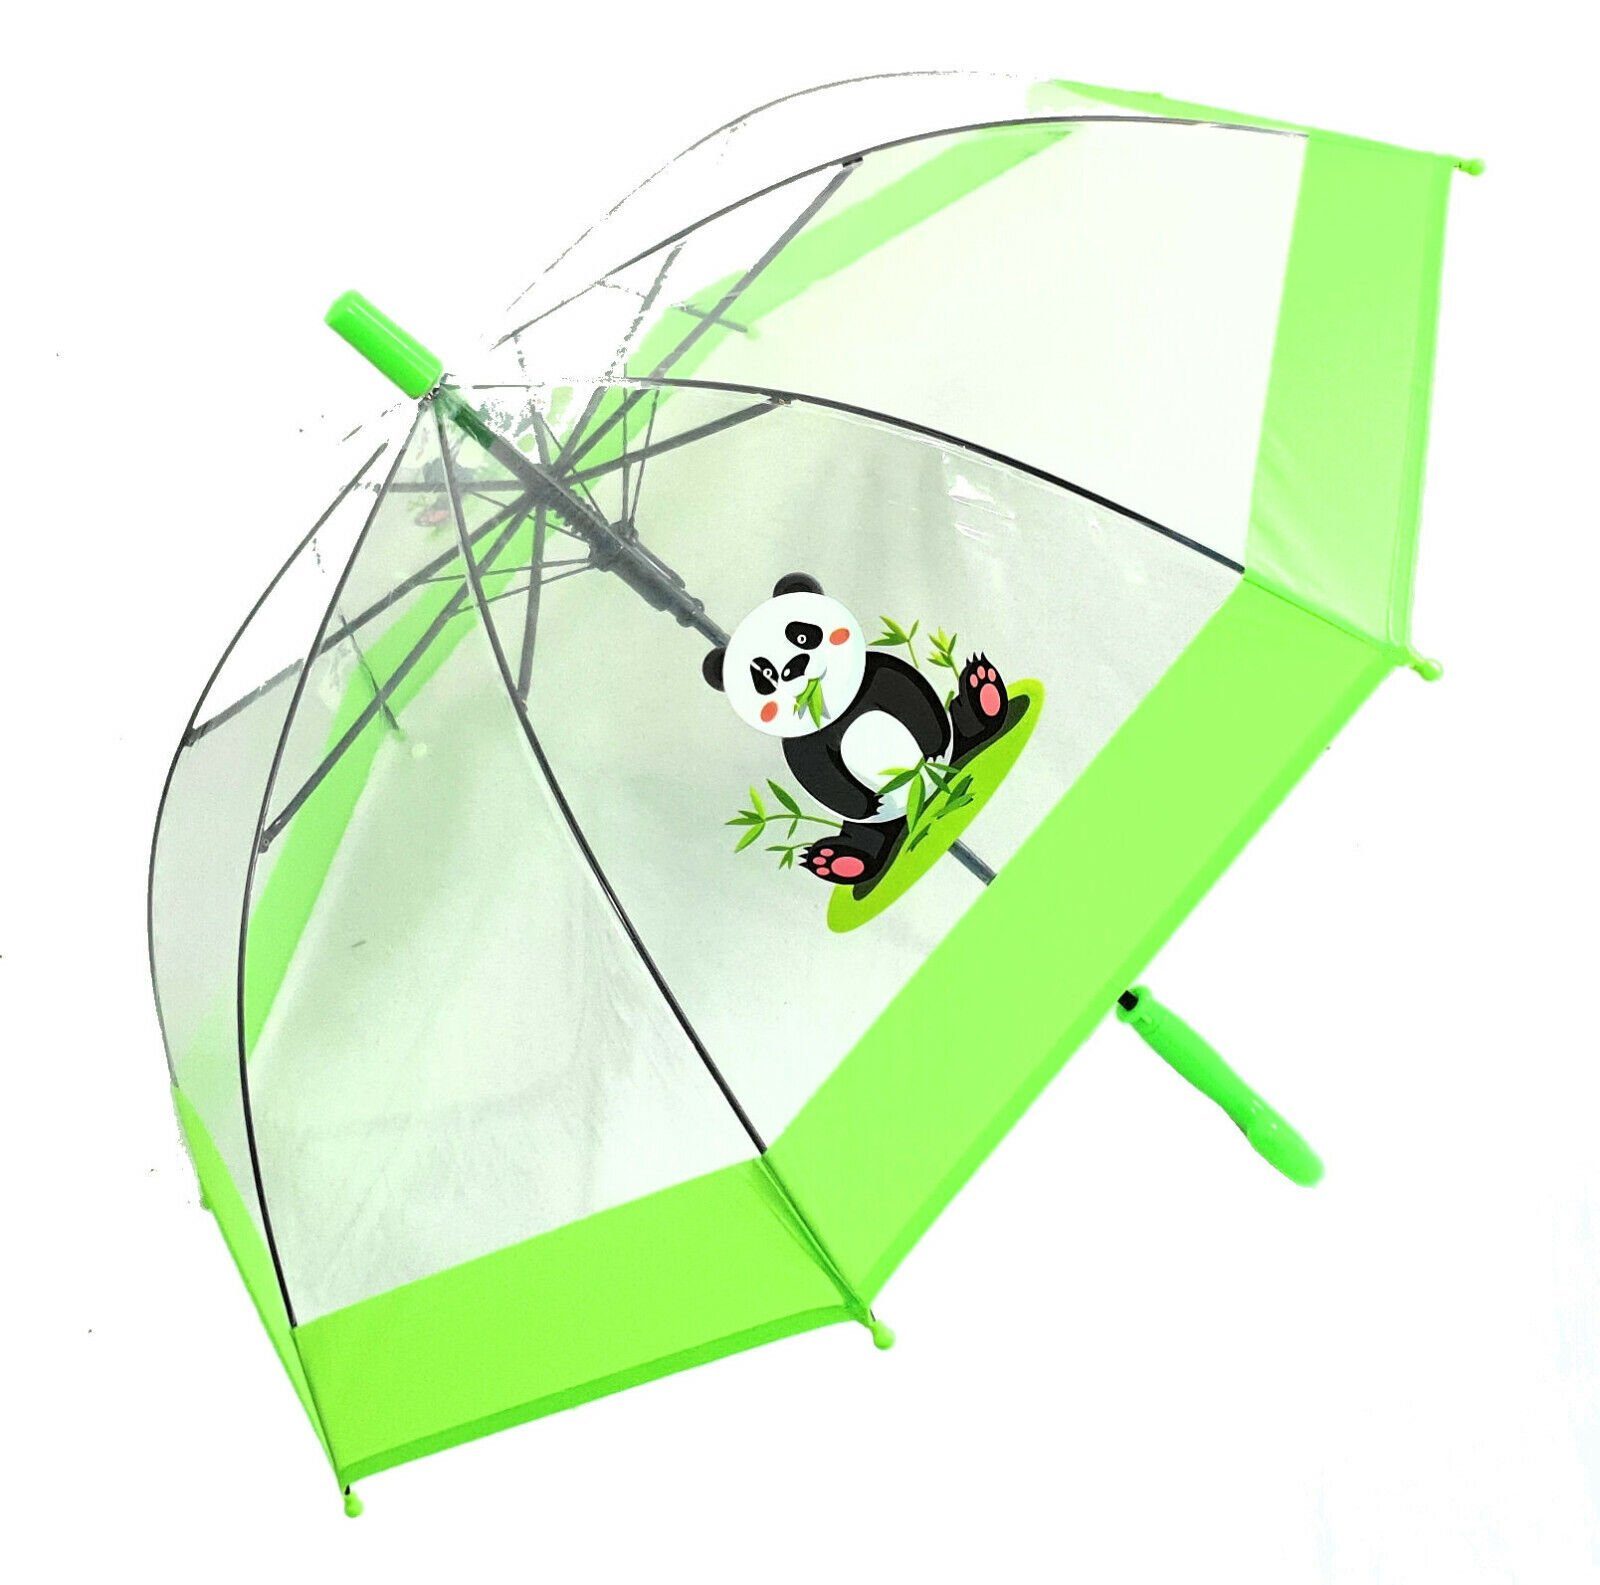 Dr. Neuser Stockregenschirm Kinder tranparent Regenschirm Automatik, durchsichtig grün süßer transparent Panda mit